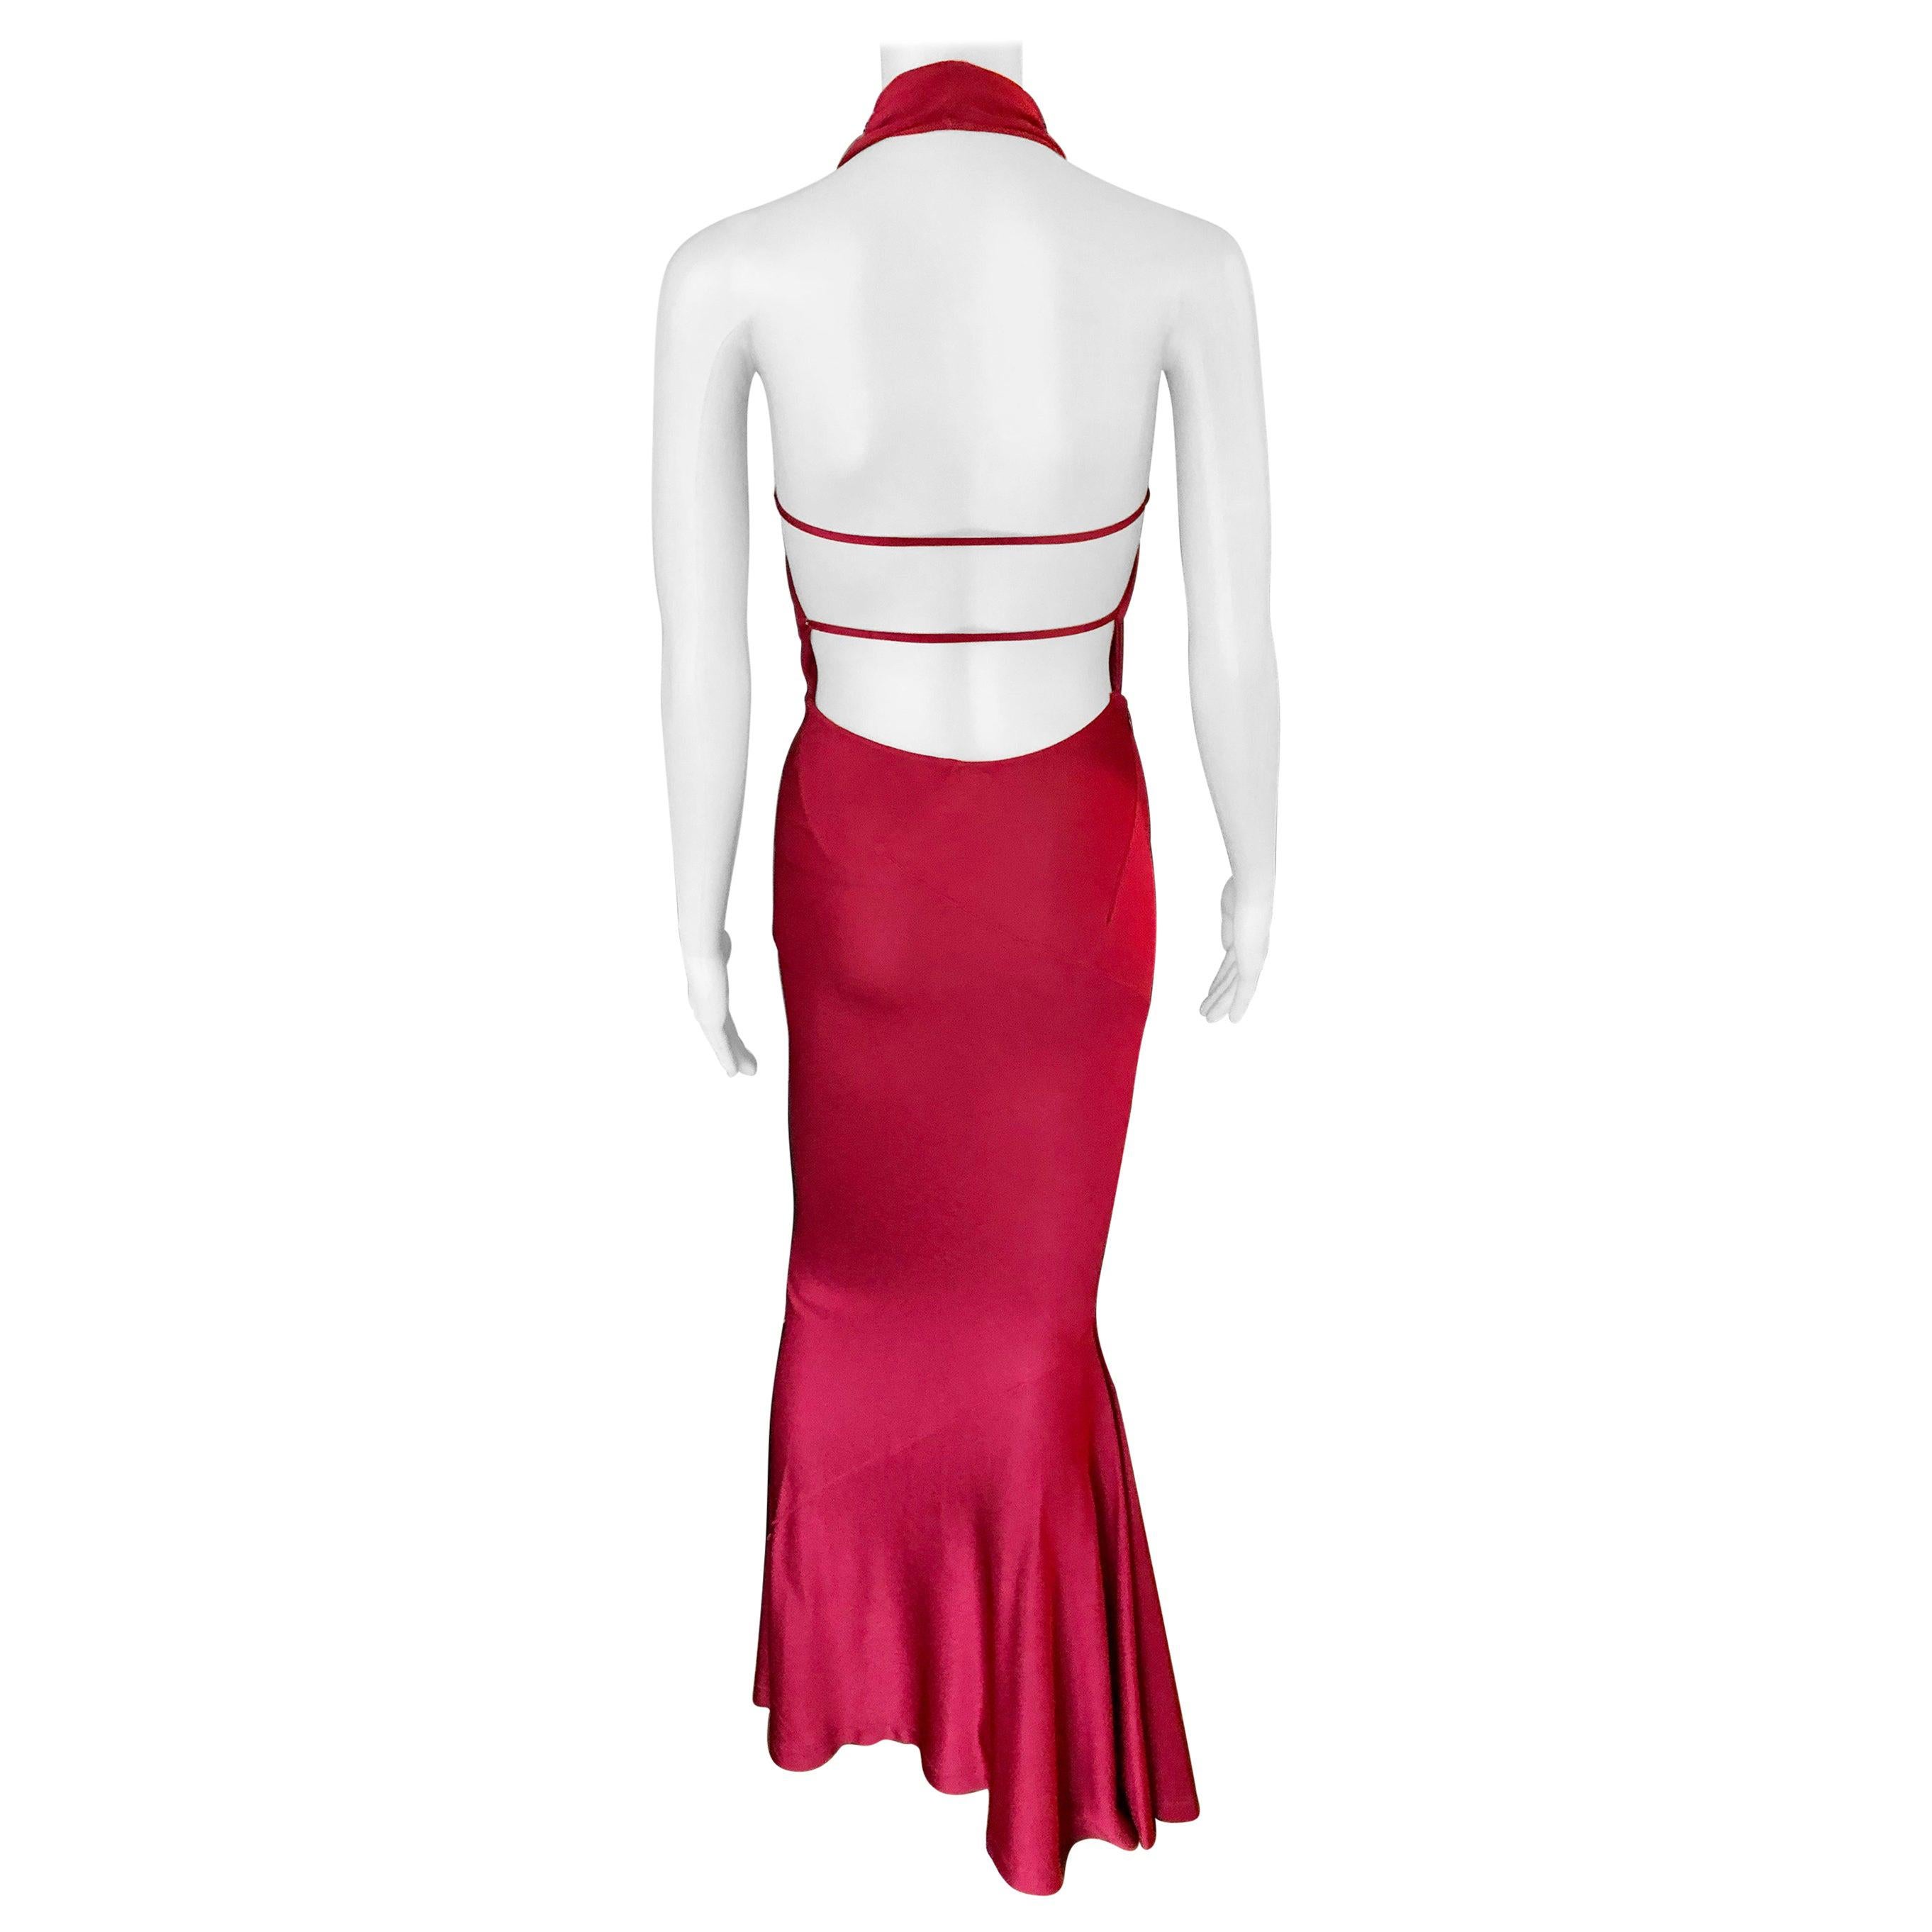 Buy > red halter dress > in stock